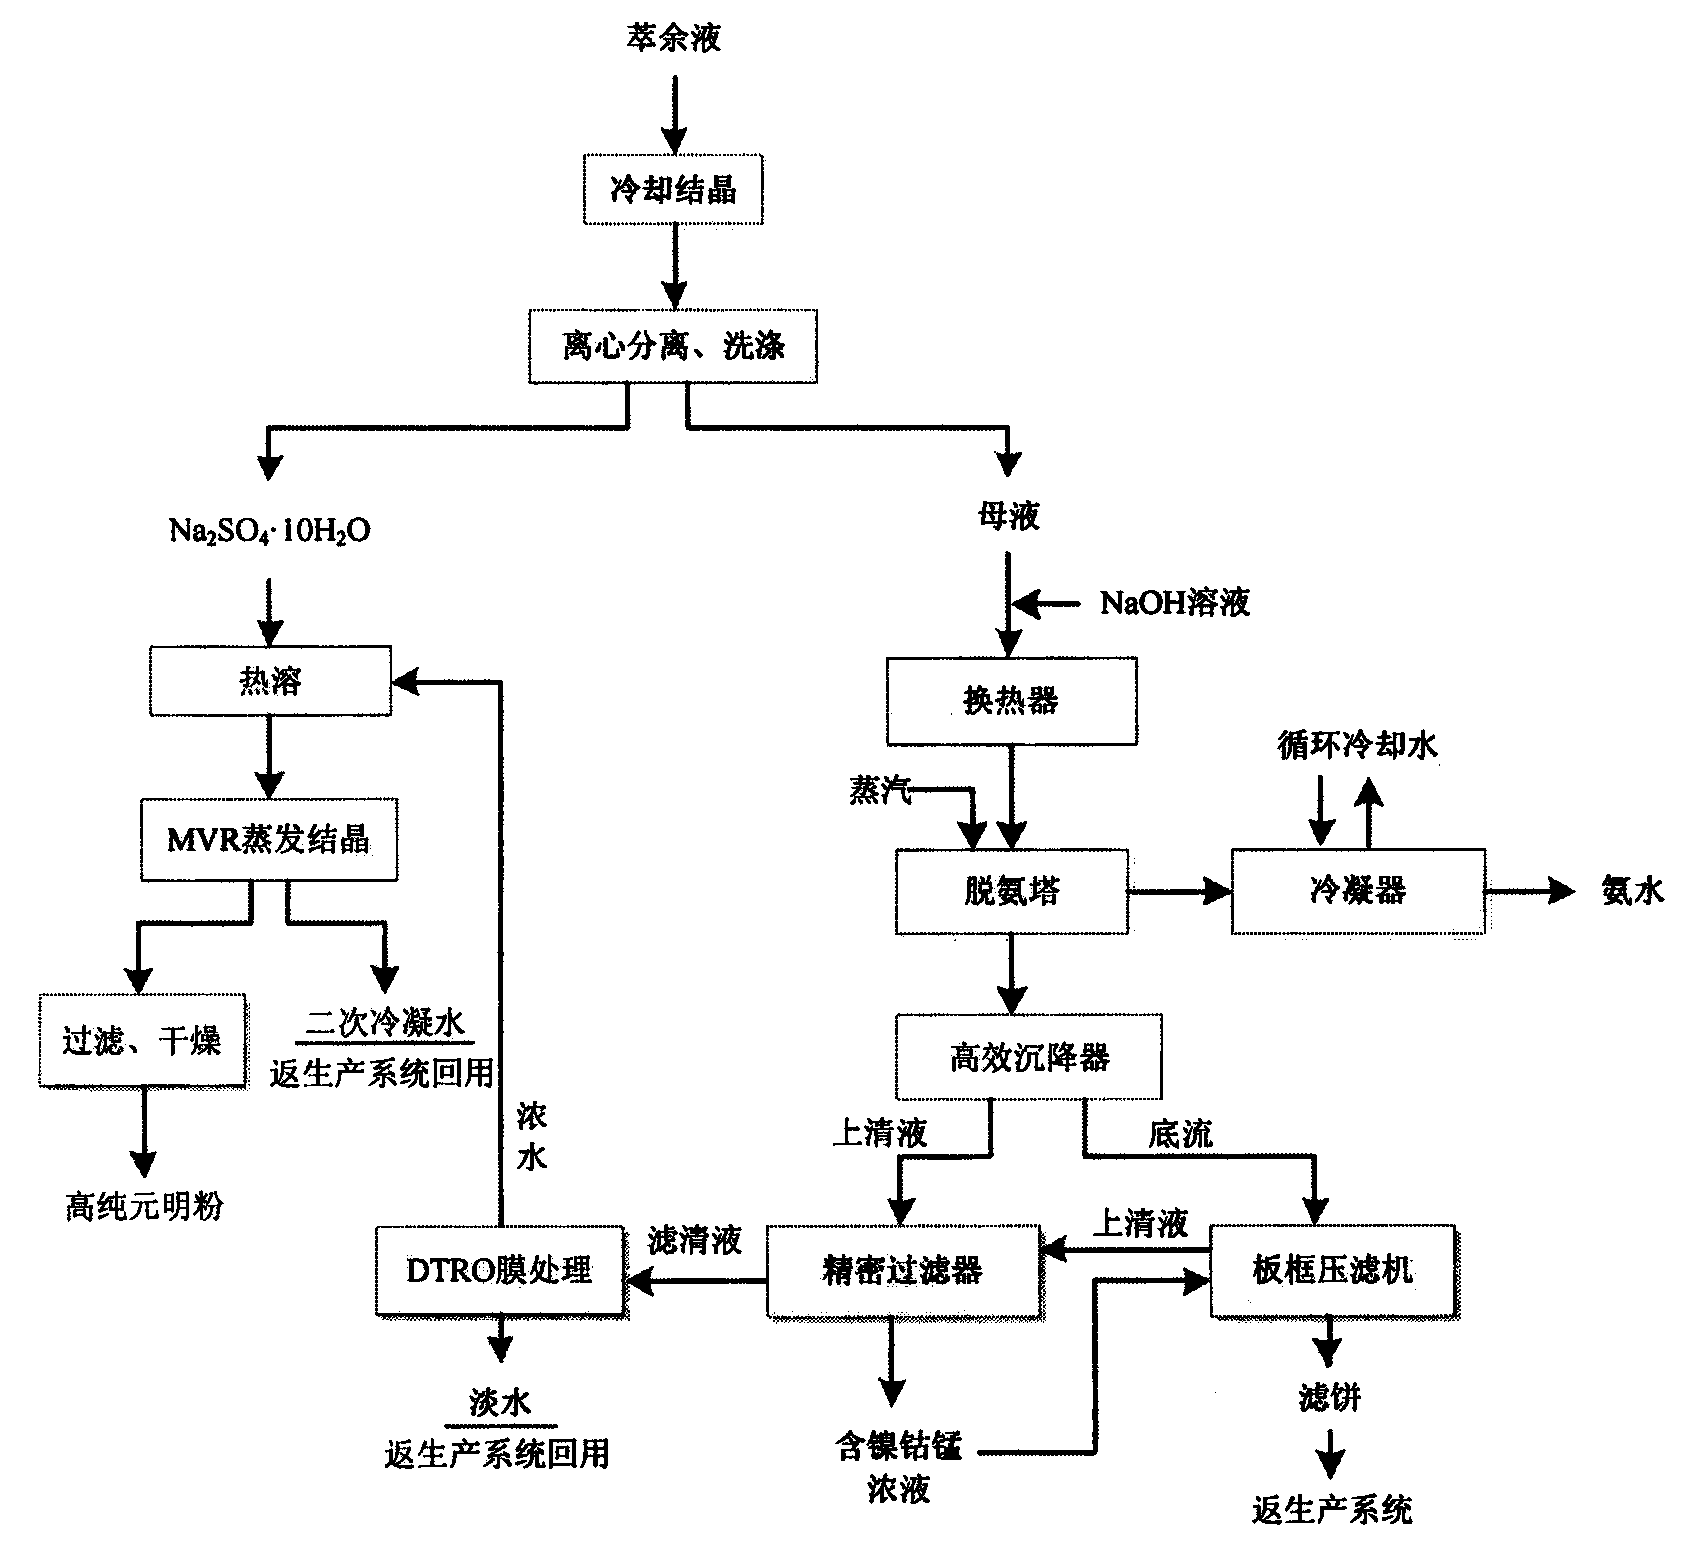 Processing method of complex raffinate